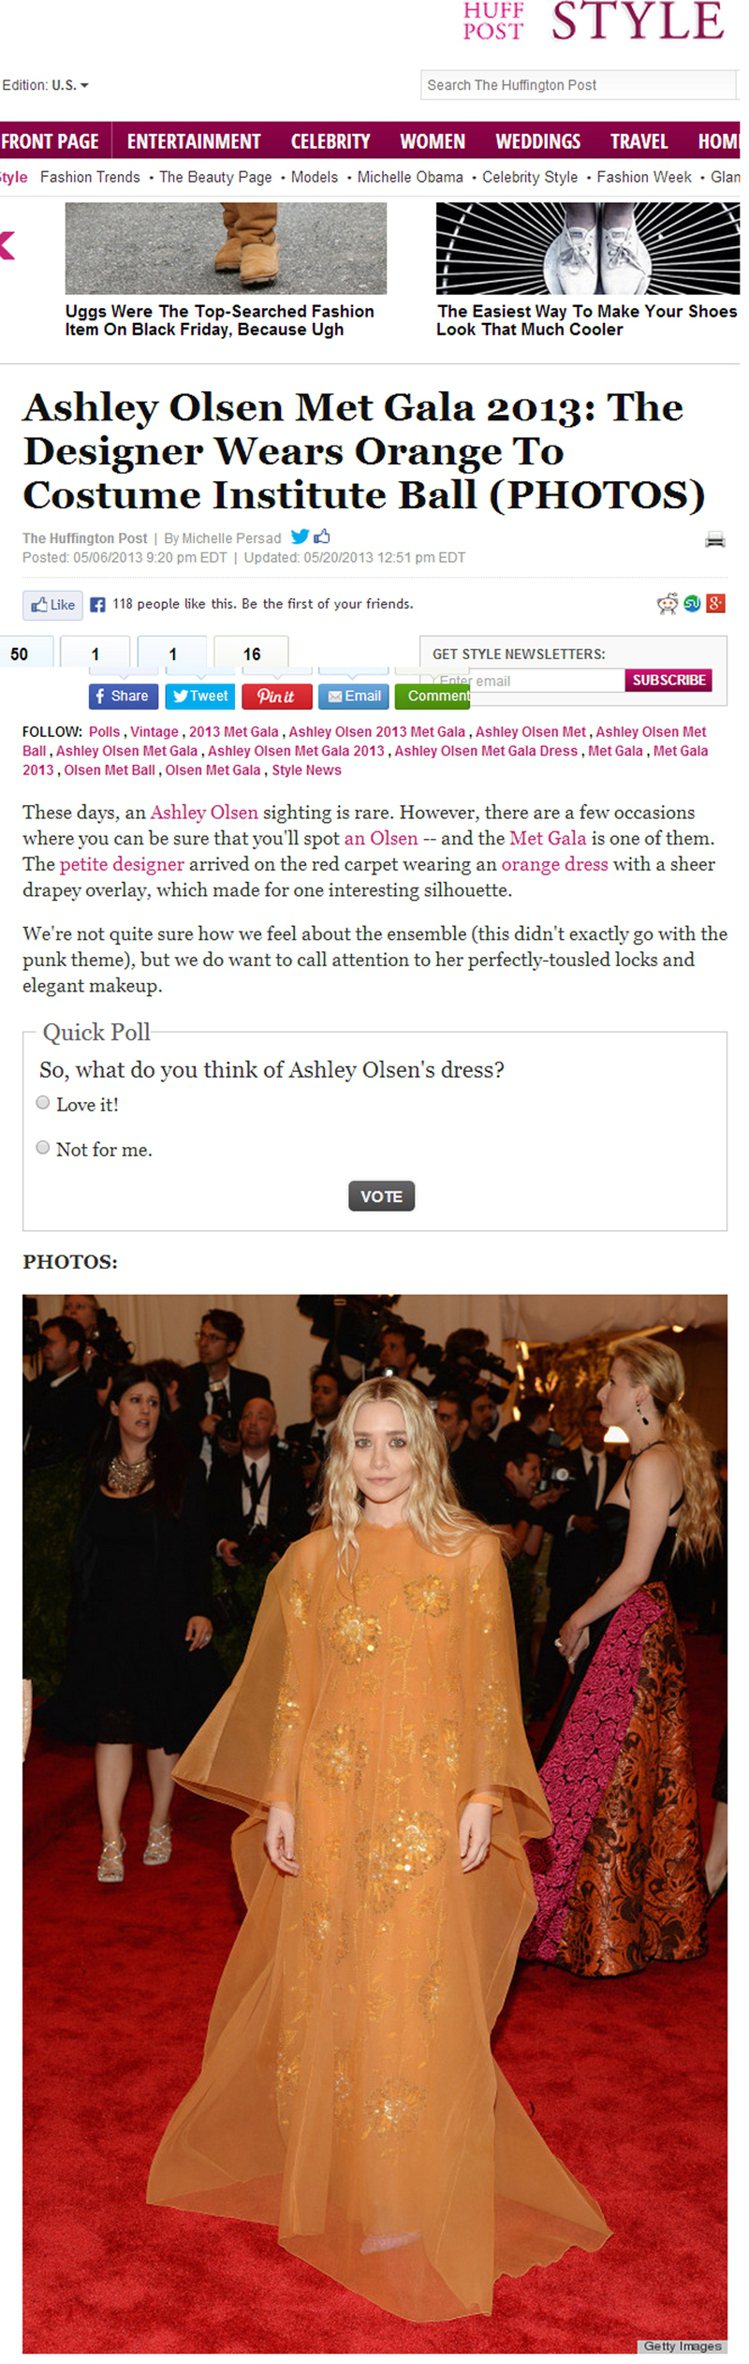 Ashley Olsen 穿著 Dior 高級訂製古董禮服，橘色薄紗內搭刺繡長禮服的設計，看起來就像童話故事裡的小仙子，只不過這身仙子裝出現在紅毯上難免有點怪怪的。圖／擷取自huffingtonpost.com